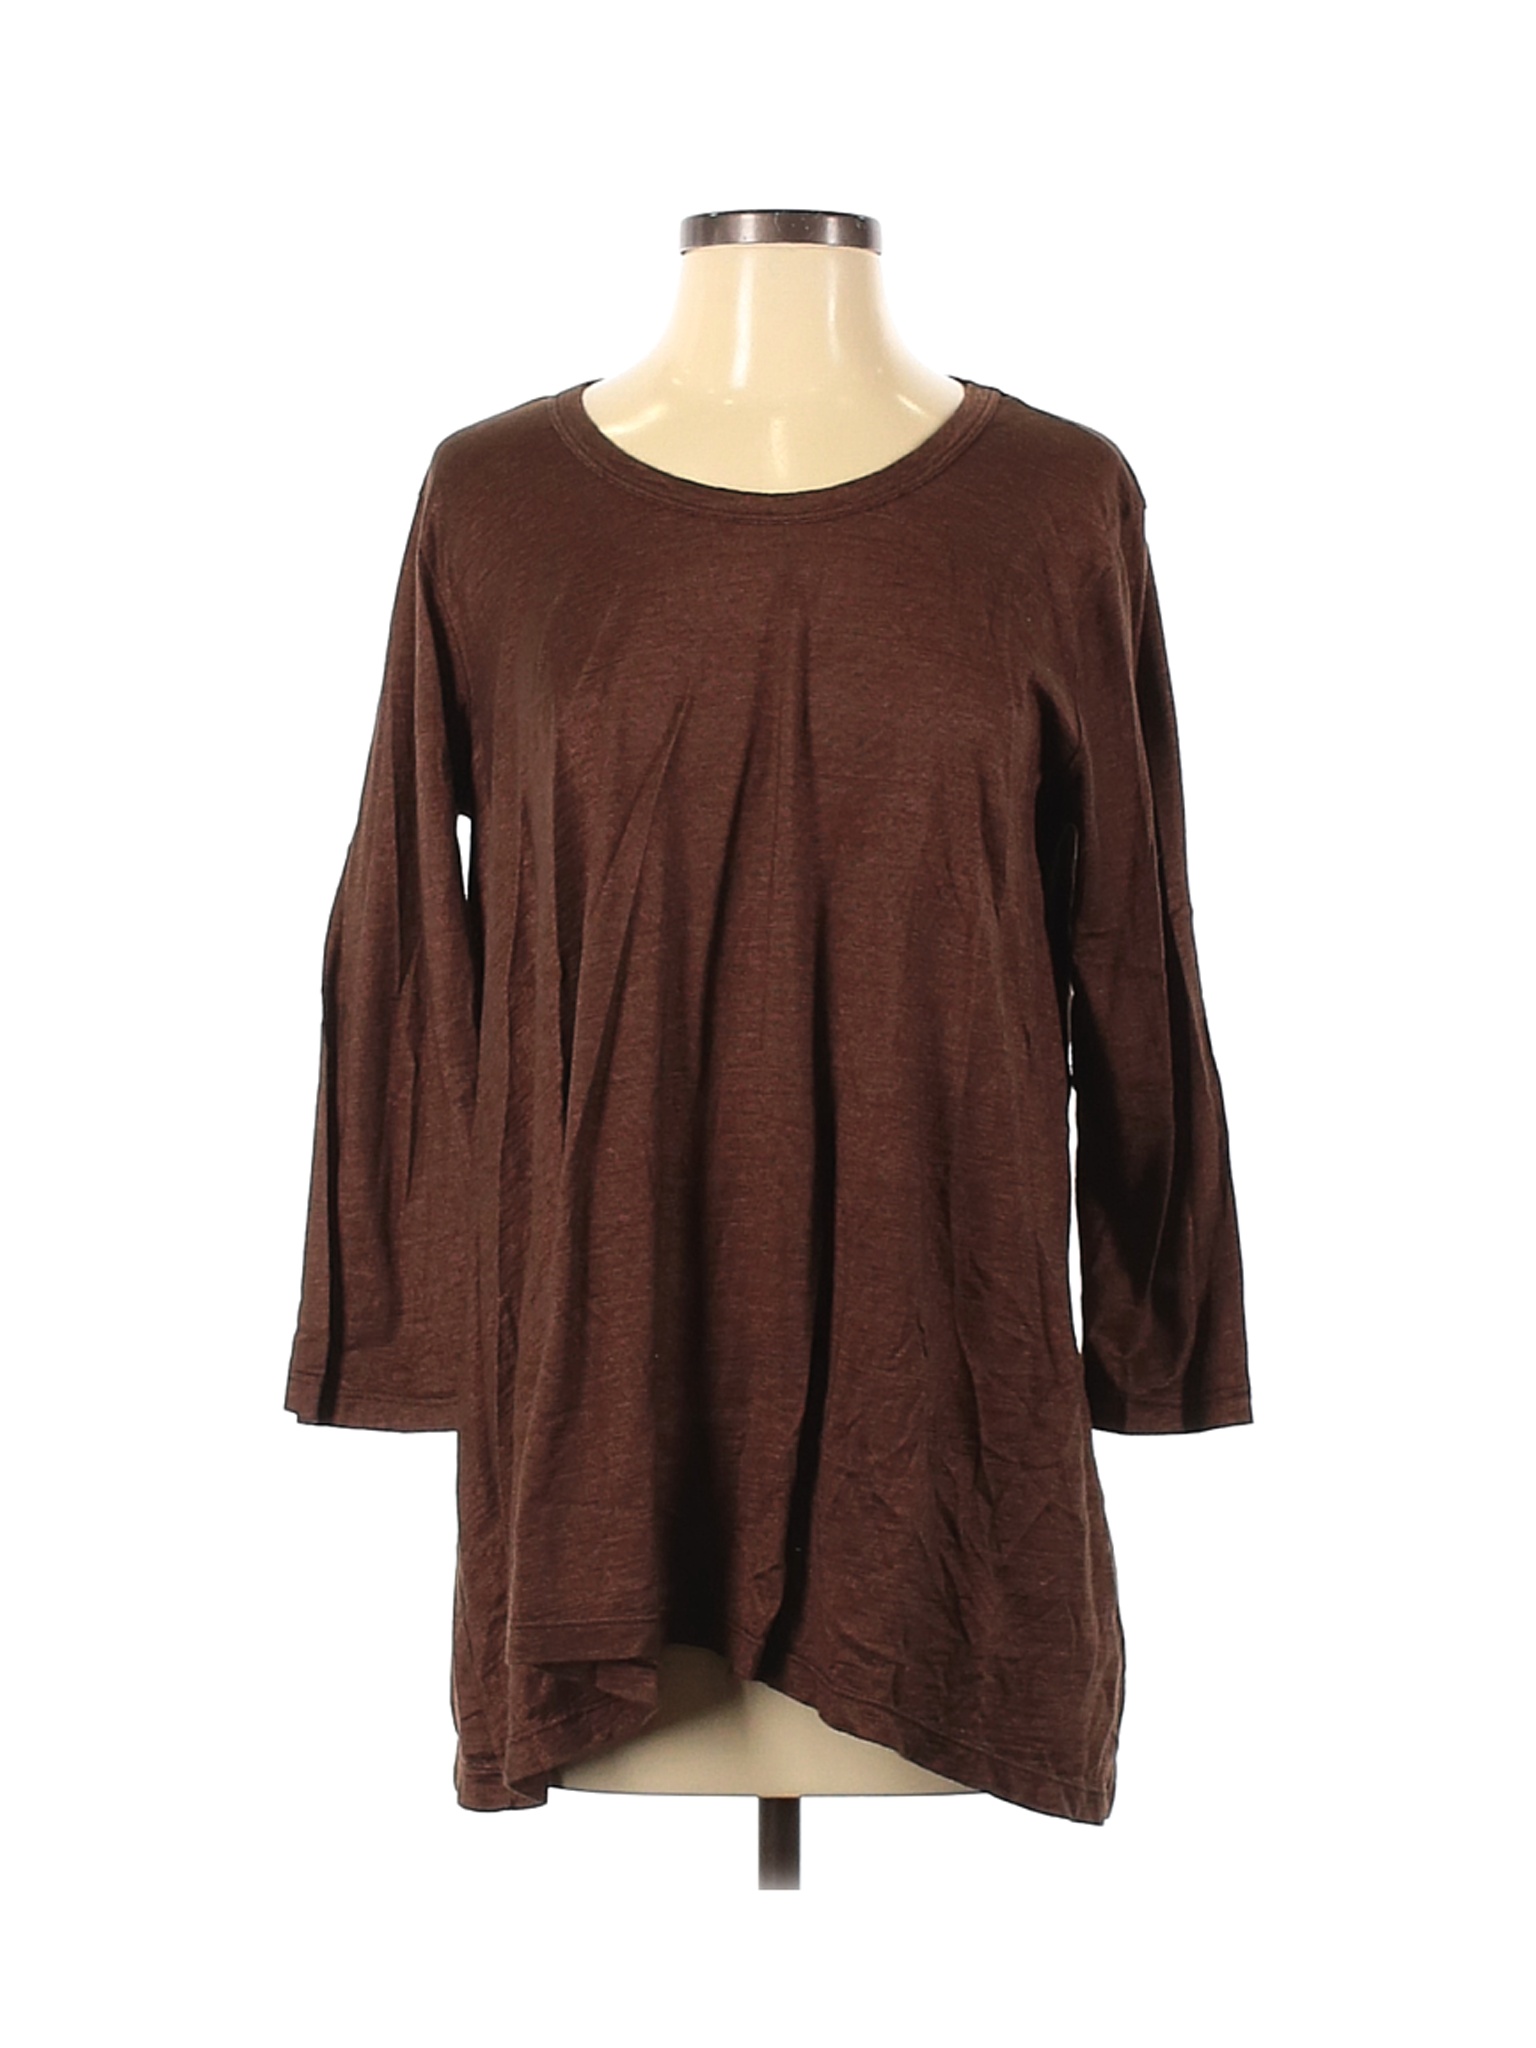 Prairie Cotton Women Brown Short Sleeve Top S | eBay